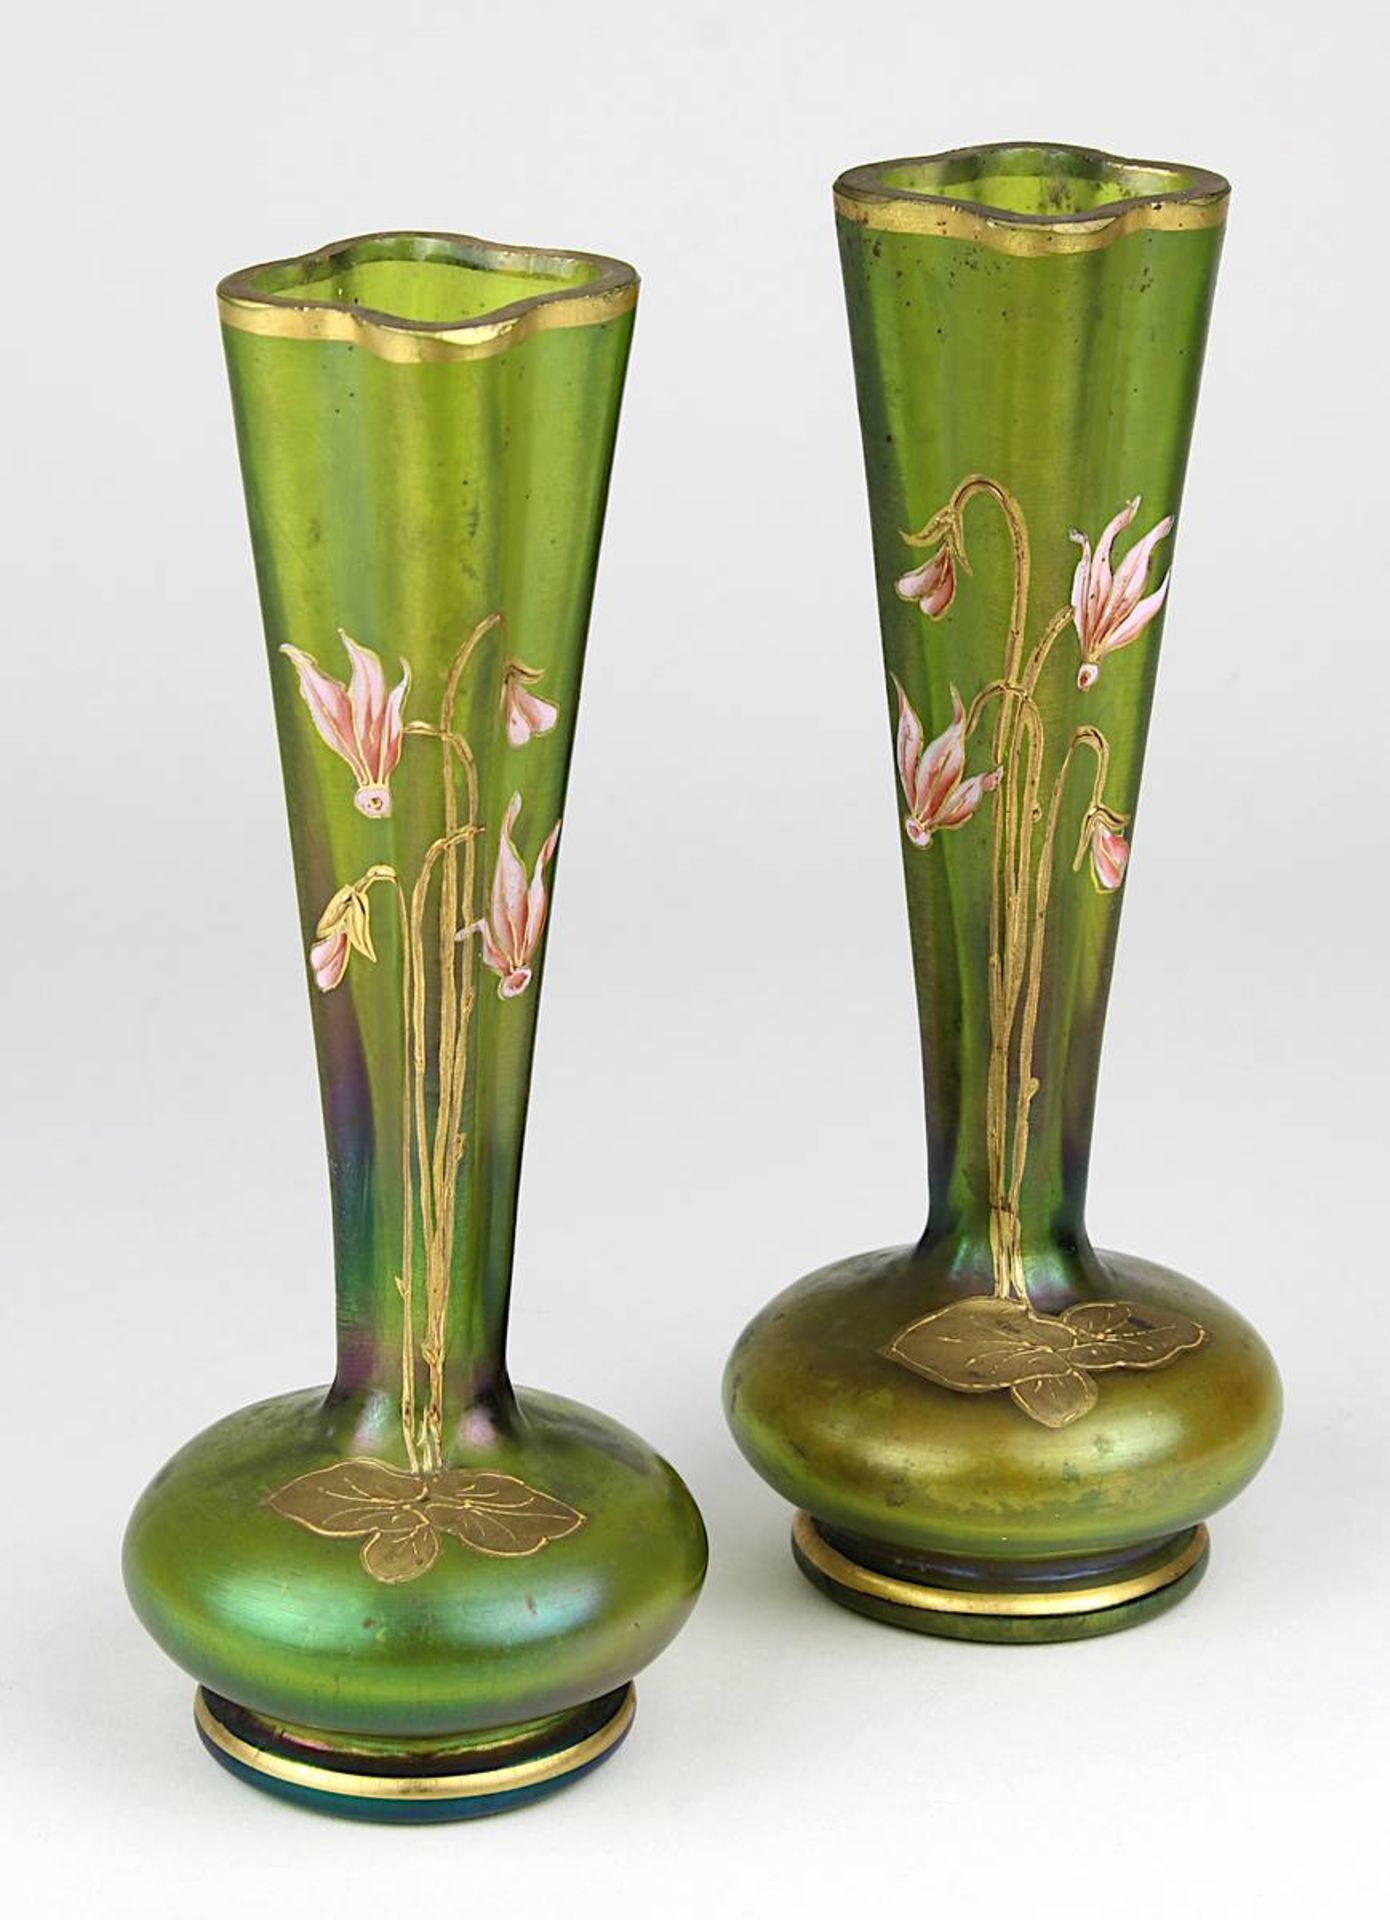 Paar Poschinger Jugendstilvasen, Buchenau um 1900, grün durchgefärbtes Glas, Oberfläche leicht